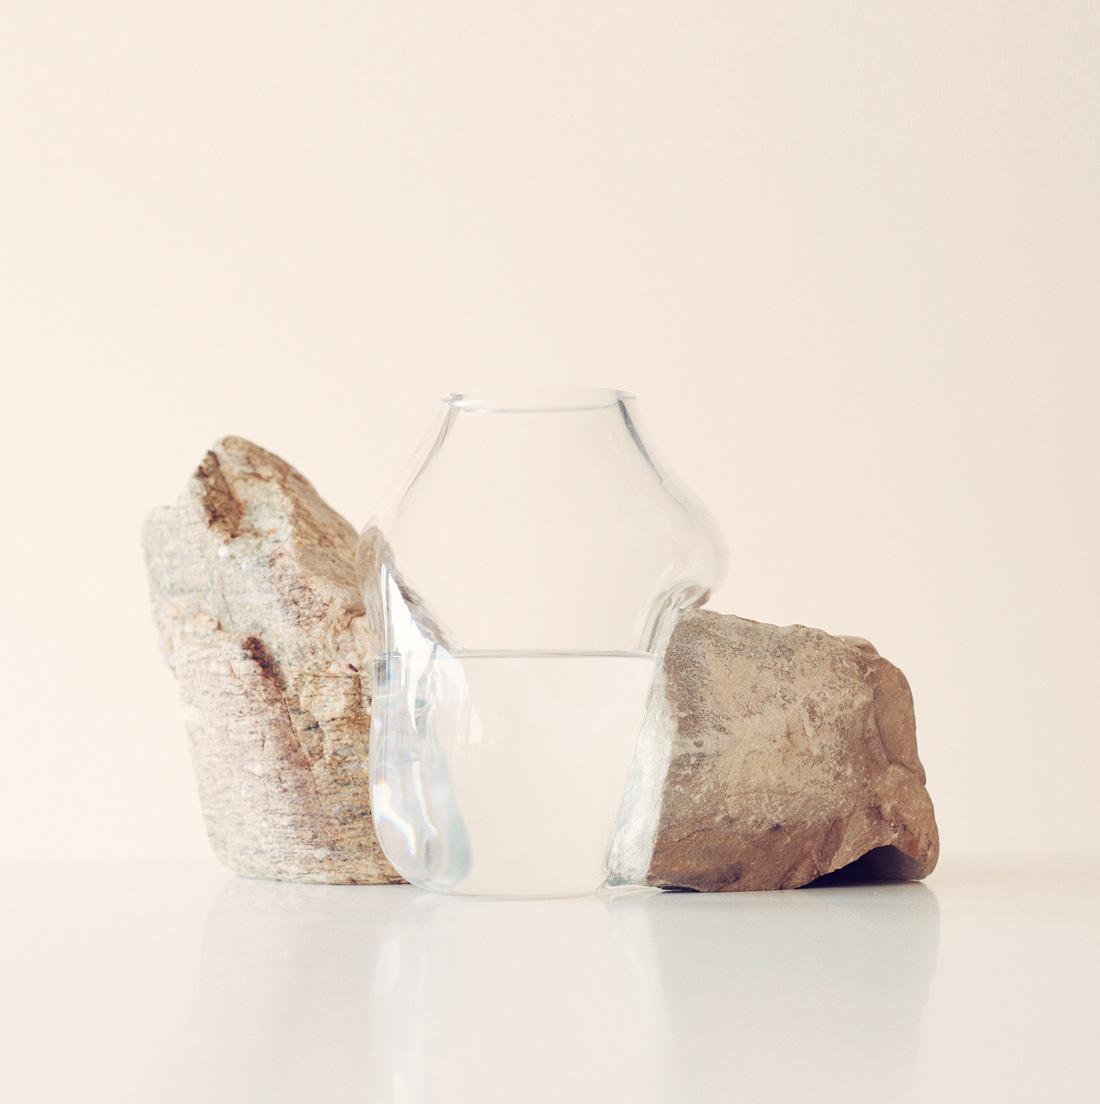 各国の土地の記憶を持つ石とフランスやイタリアで制作した吹きガラスが「旅」を意識させる。